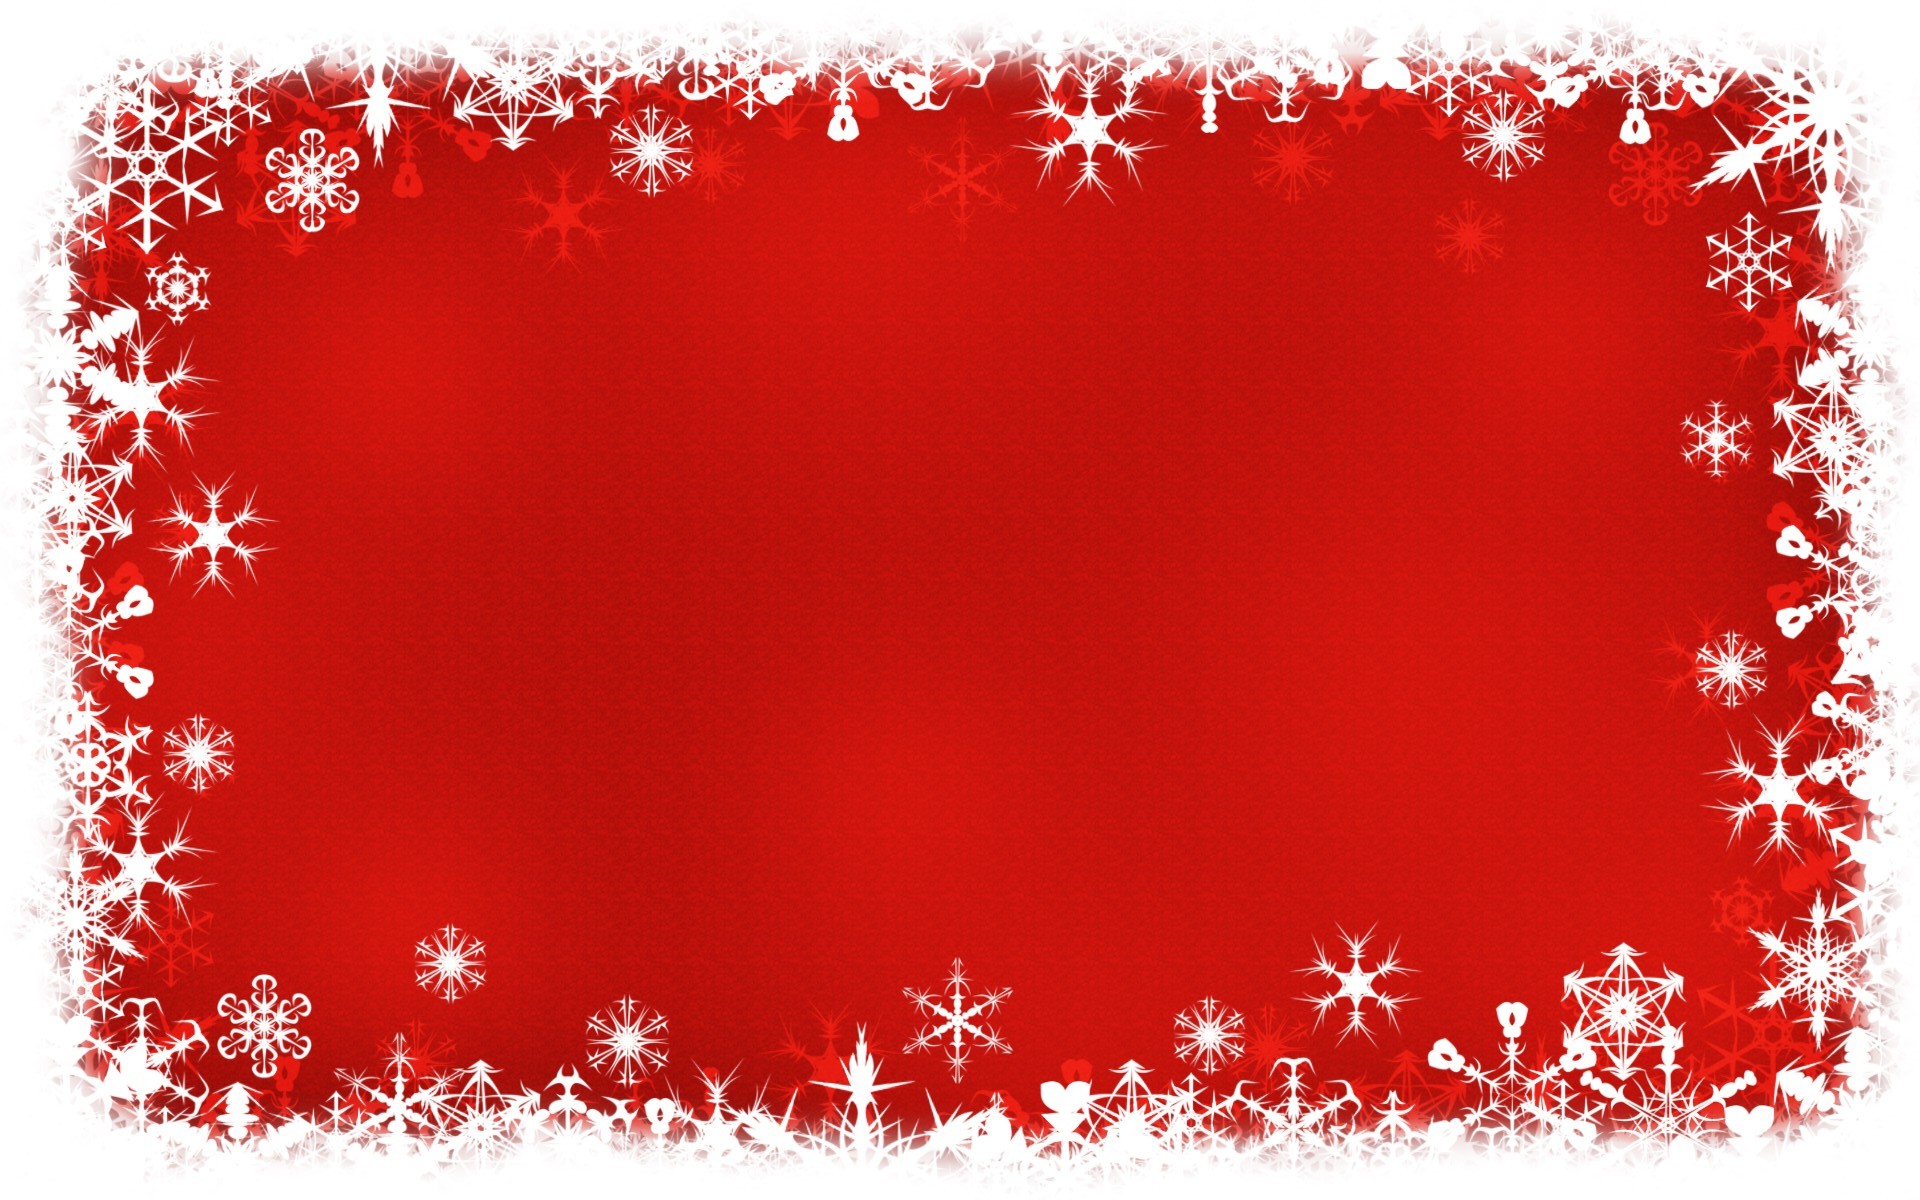 Màu đỏ Giáng sinh là một trong những màu sắc đặc trưng nhất của mùa lễ hội này. Không thể thiếu được trong hình ảnh Giáng sinh cực kỳ đẹp này. Lấy tại nguồn gốc từ những chiếc quần áo áo len màu đỏ giống như màu của nồi đủ nấu, hình nền này cung cấp cho bạn một bức tranh tuyệt đẹp về mùa Noel. Hãy xóa sạch đi nỗi buồn bằng một hình nền tuyệt đẹp như thế này.